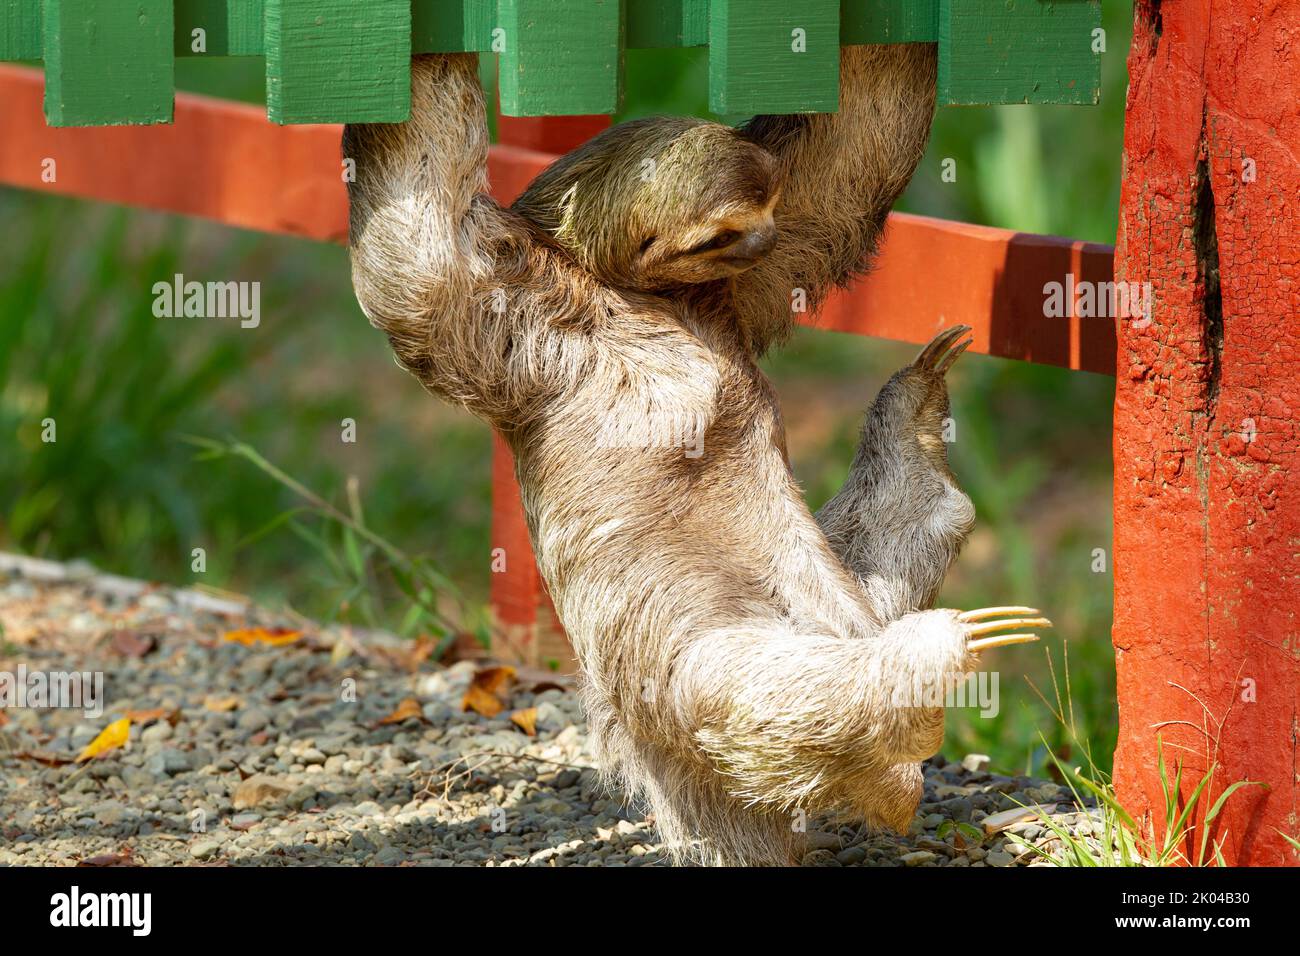 Der dreitoed Sloth (Bradypus infuscatus) klettert am Boden eines Zauns entlang, nur wenige Zentimeter vom Boden entfernt, um von Baum zu Baum zu gehen Stockfoto